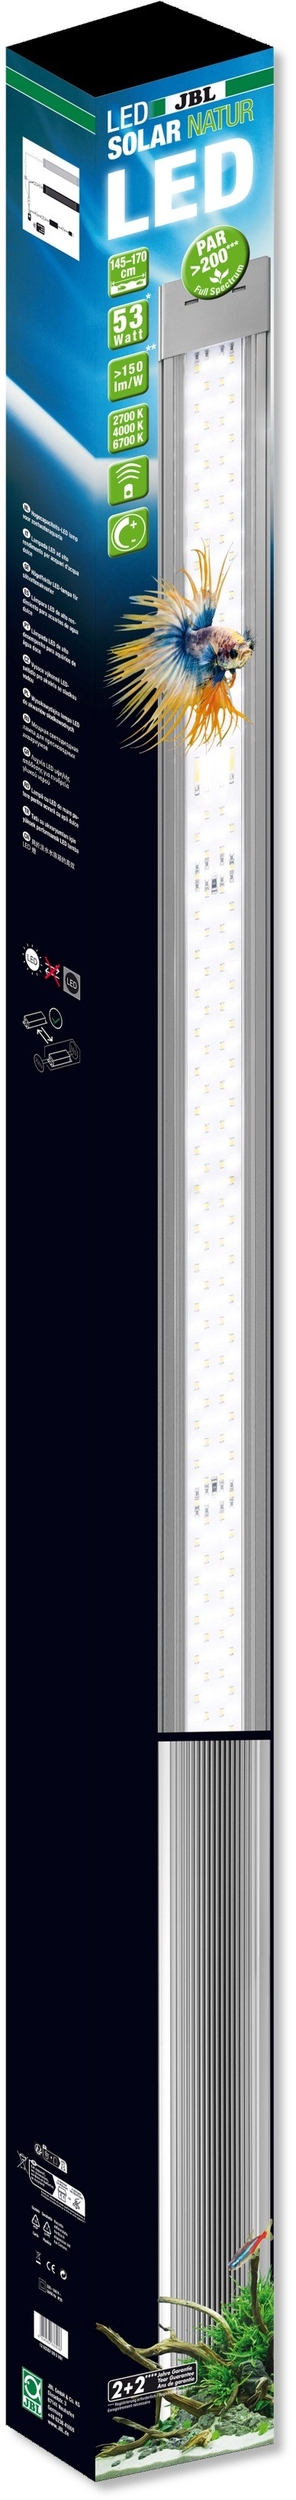 JBL LED Solar Natur G2 53W rampe aquarium Eau douce de 145 à 170 cm ou remplace tube T5 et T8